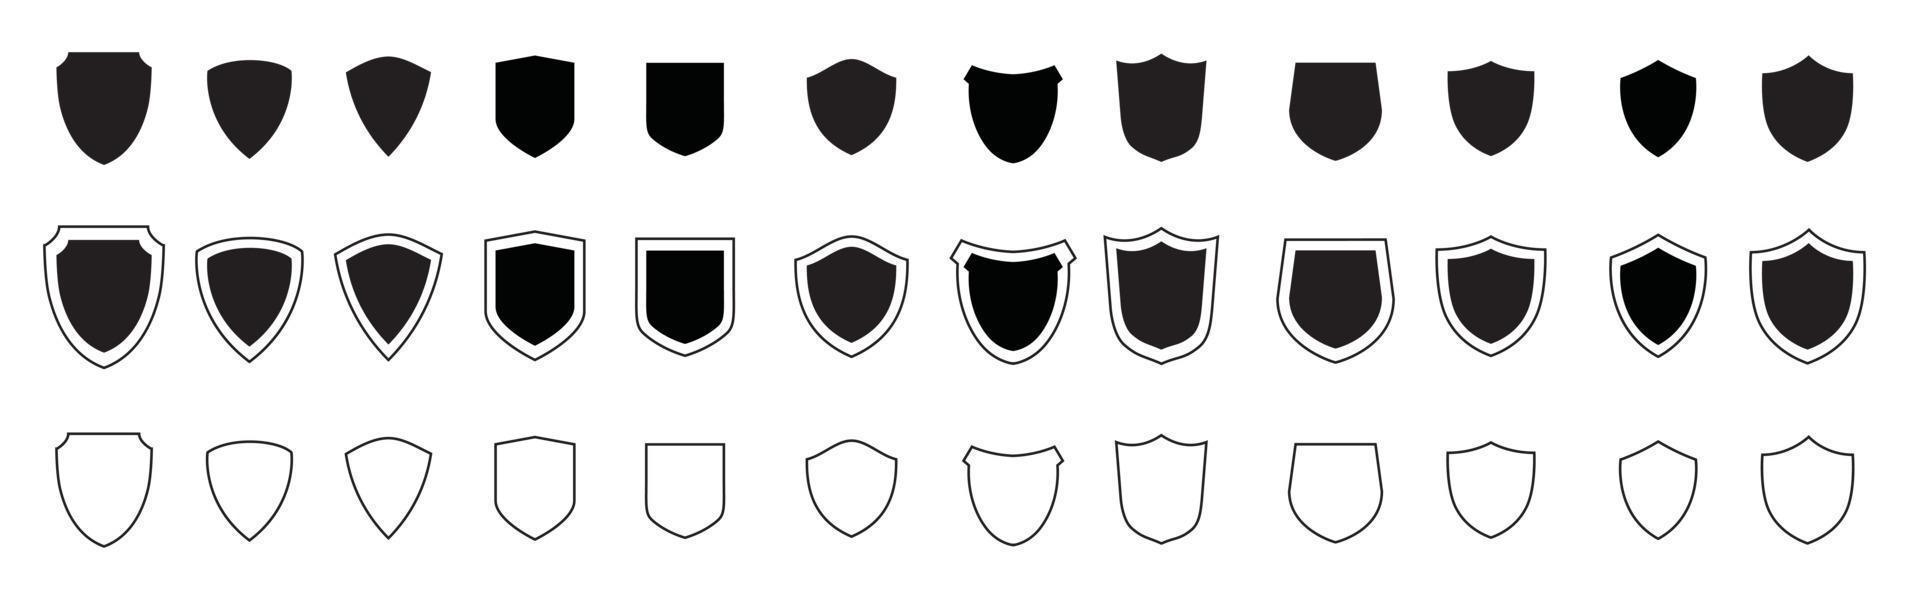 conjunto de iconos de escudo negro. proteger la colección de silueta de escudos. vector